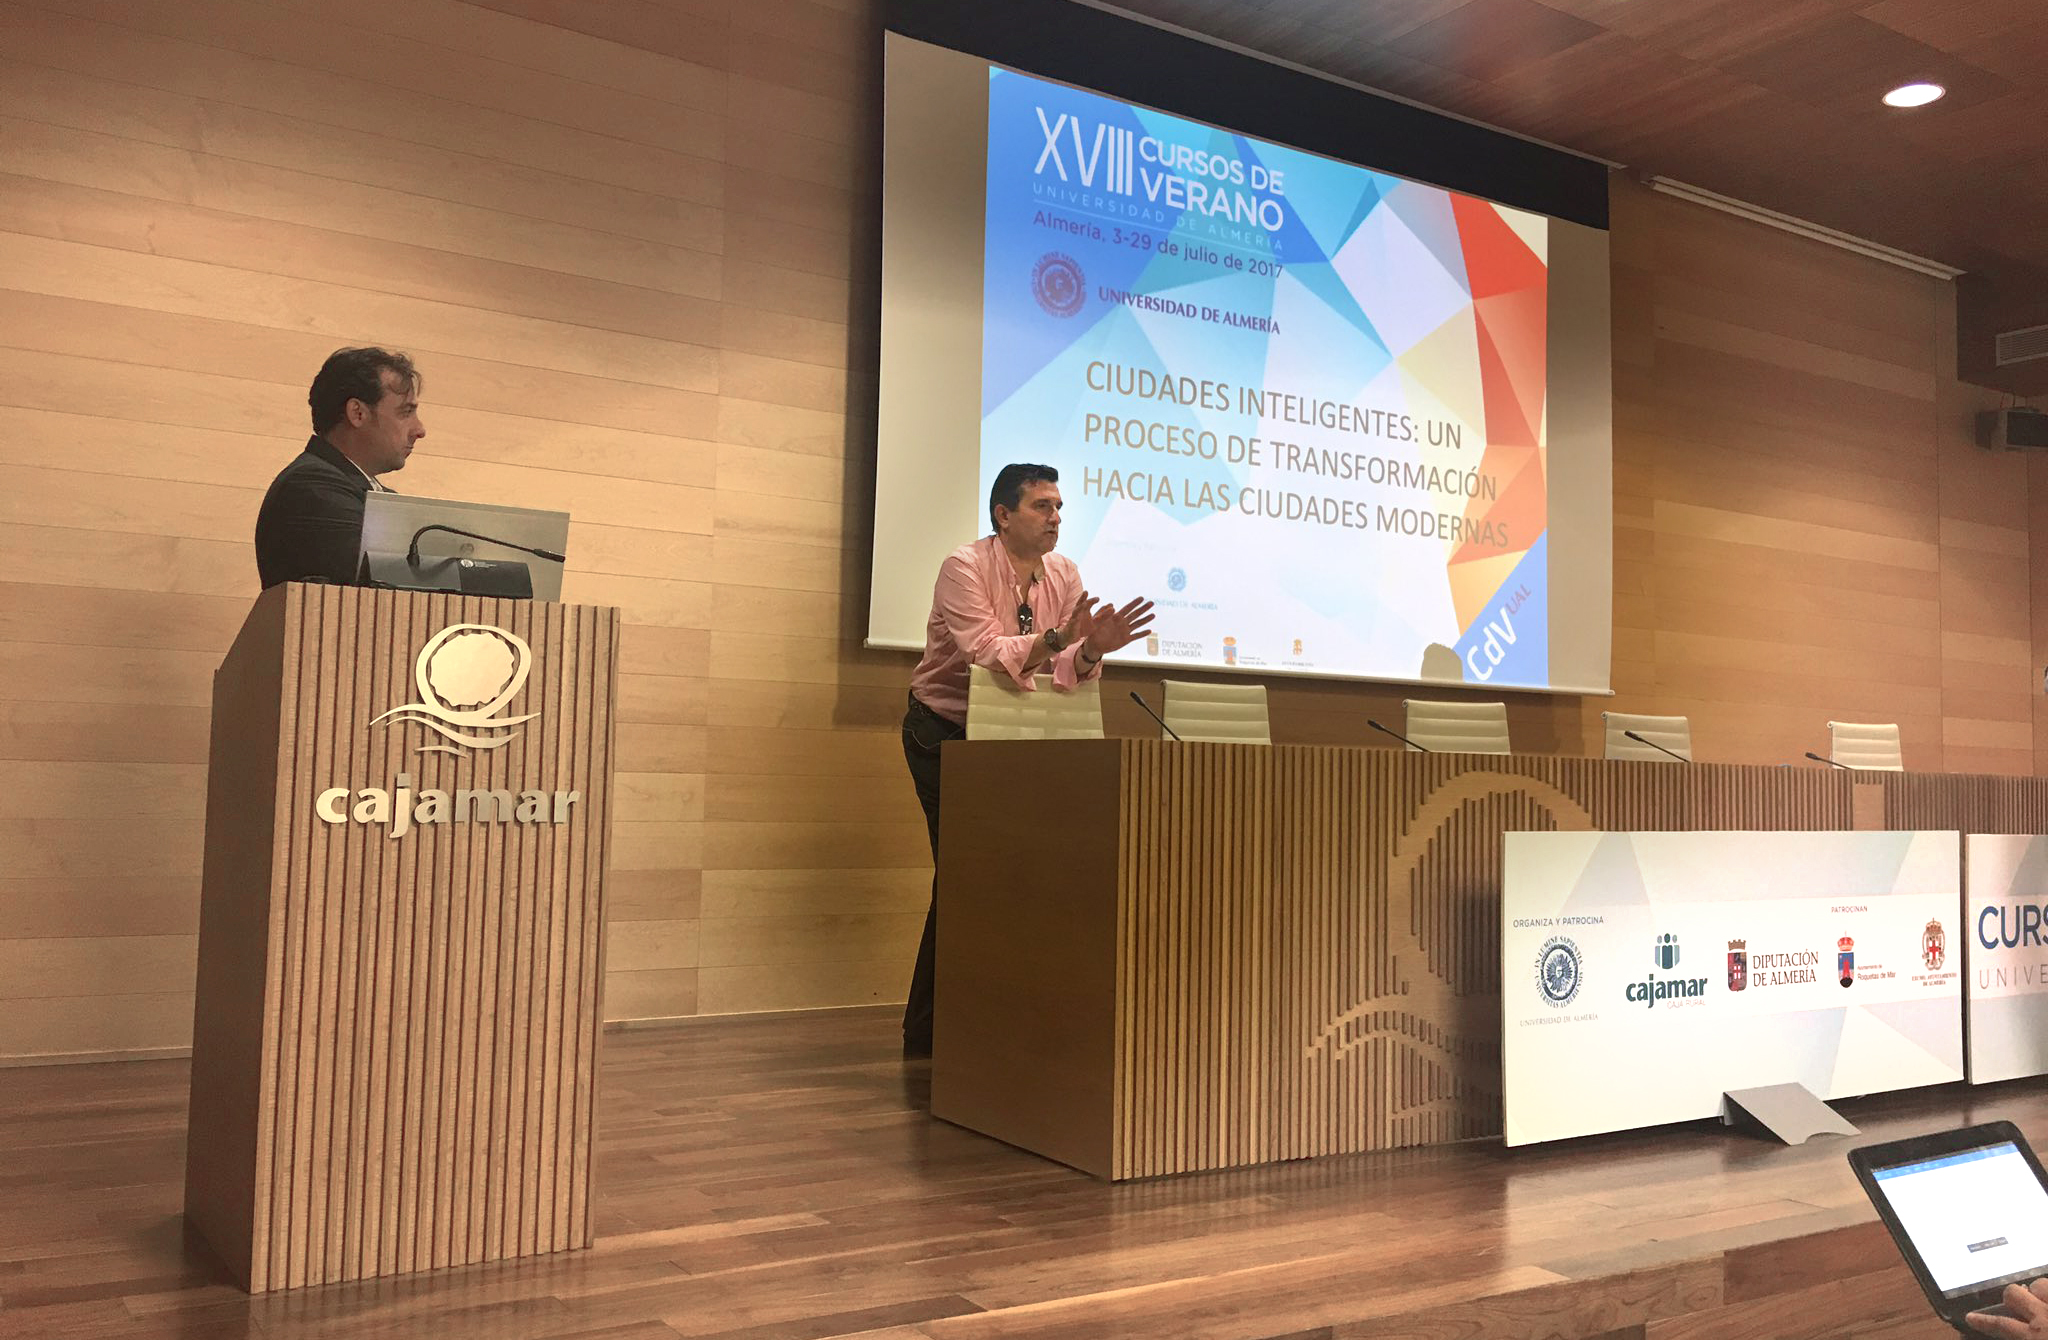 Pedro Antón, IECISA, Informática el Corte Inglés y WiFi.PRO, comparten ponencia en la jornada de Ciudades Inteligentes. Curso de Verano Universidad de Almería.